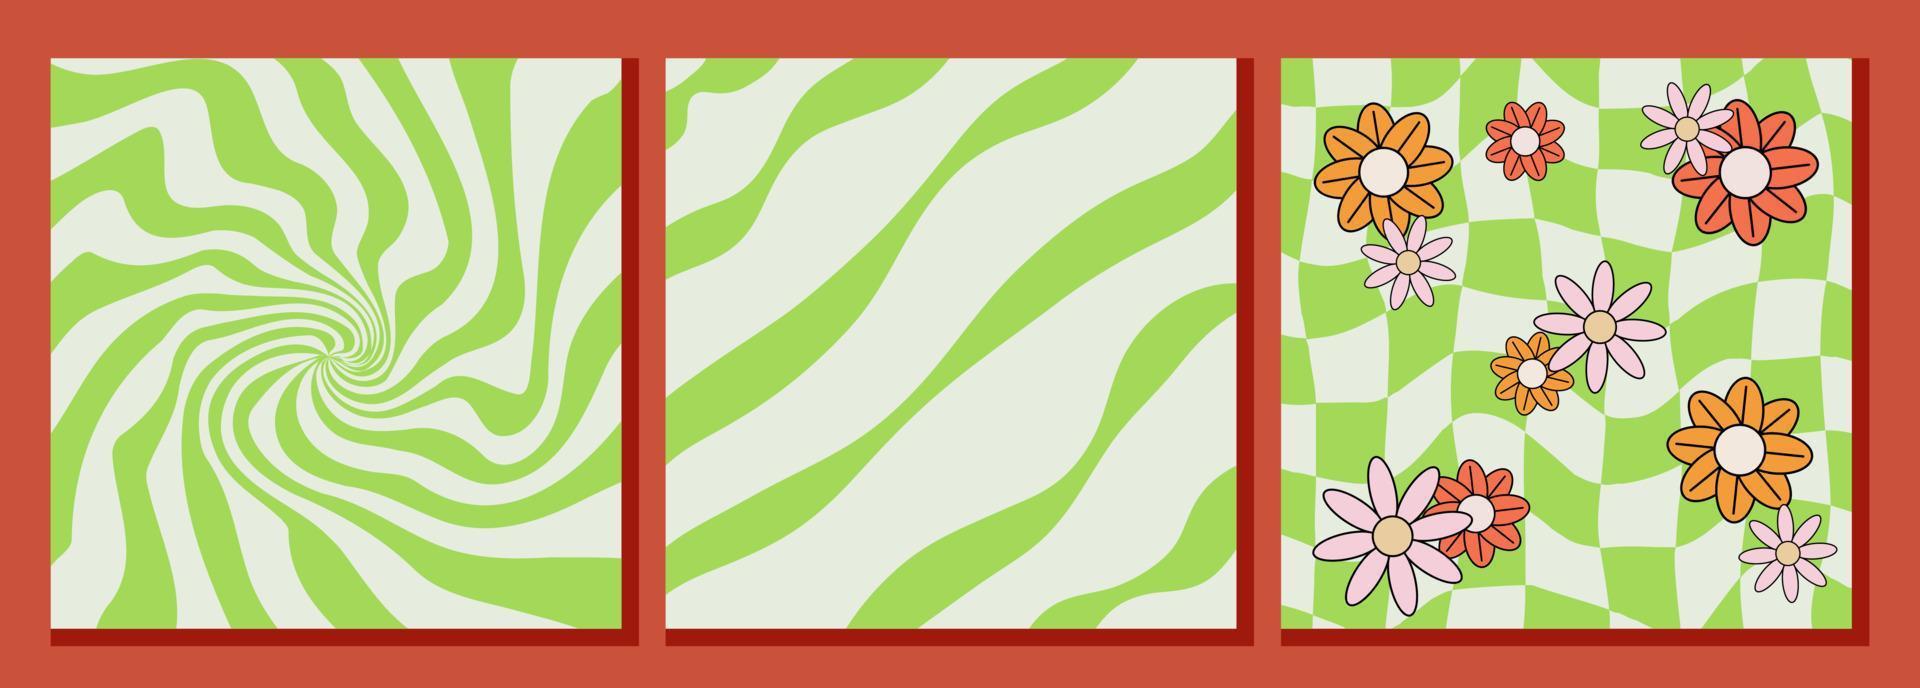 tre Groovy modelli, verde fondali con distorto spirale, diagonale Linee e scacchi tavola con fiori, vettore retrò sfondi nel Anni '70 stile.